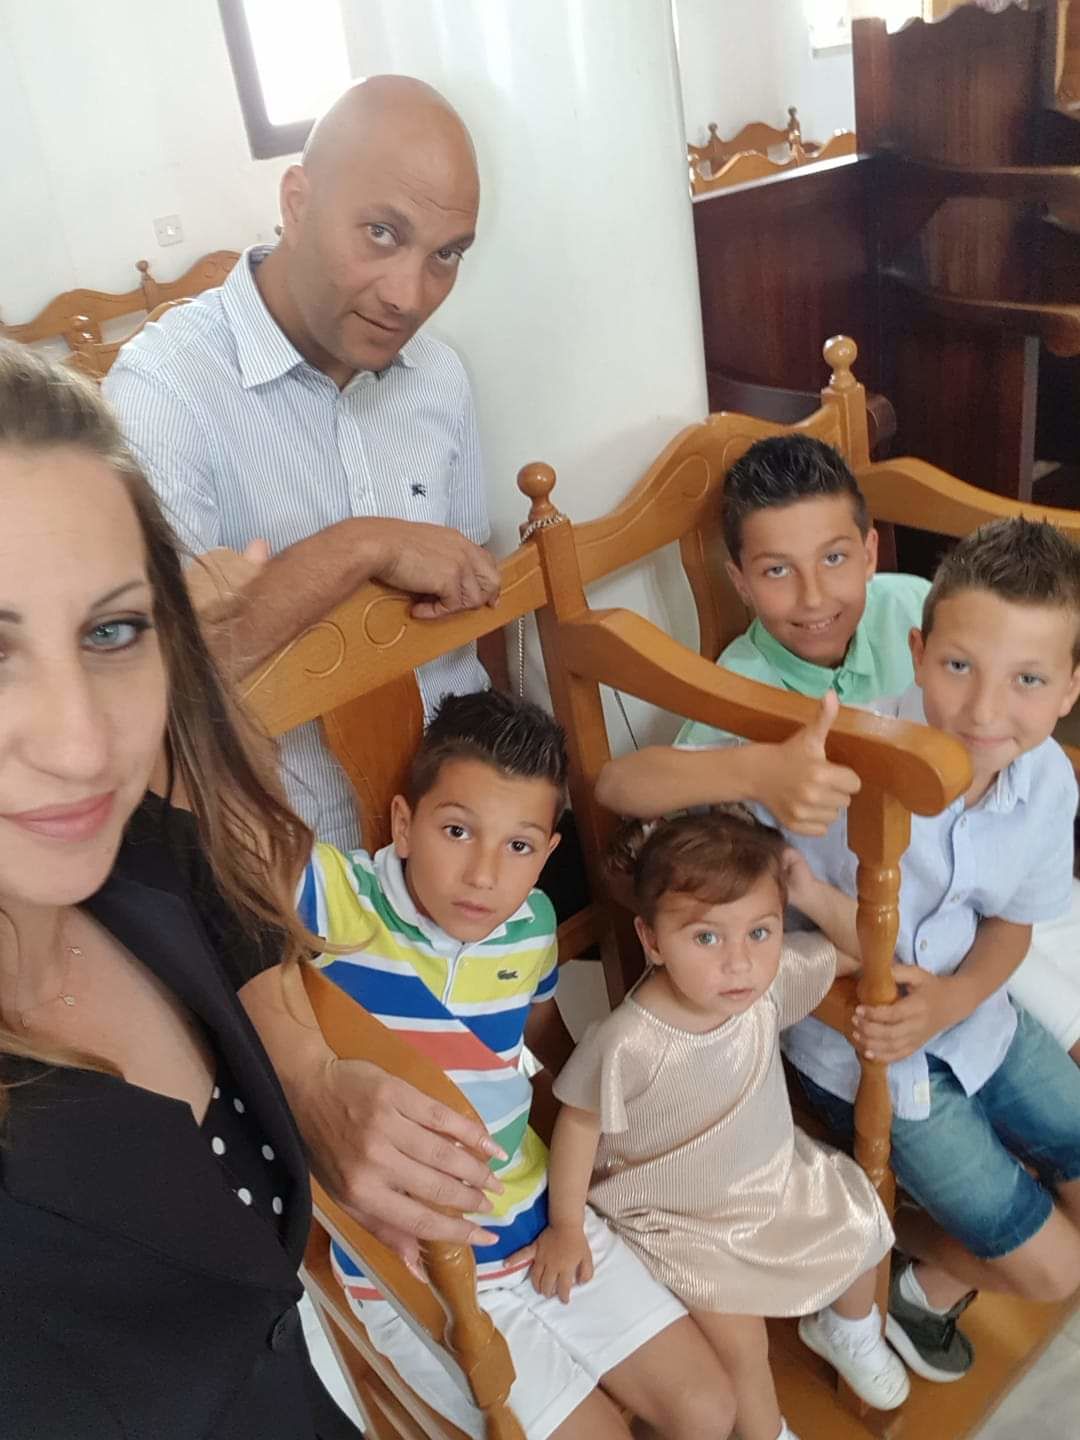 Szávai Anikó Nina a férjével és négy gyerekével Pafoson él